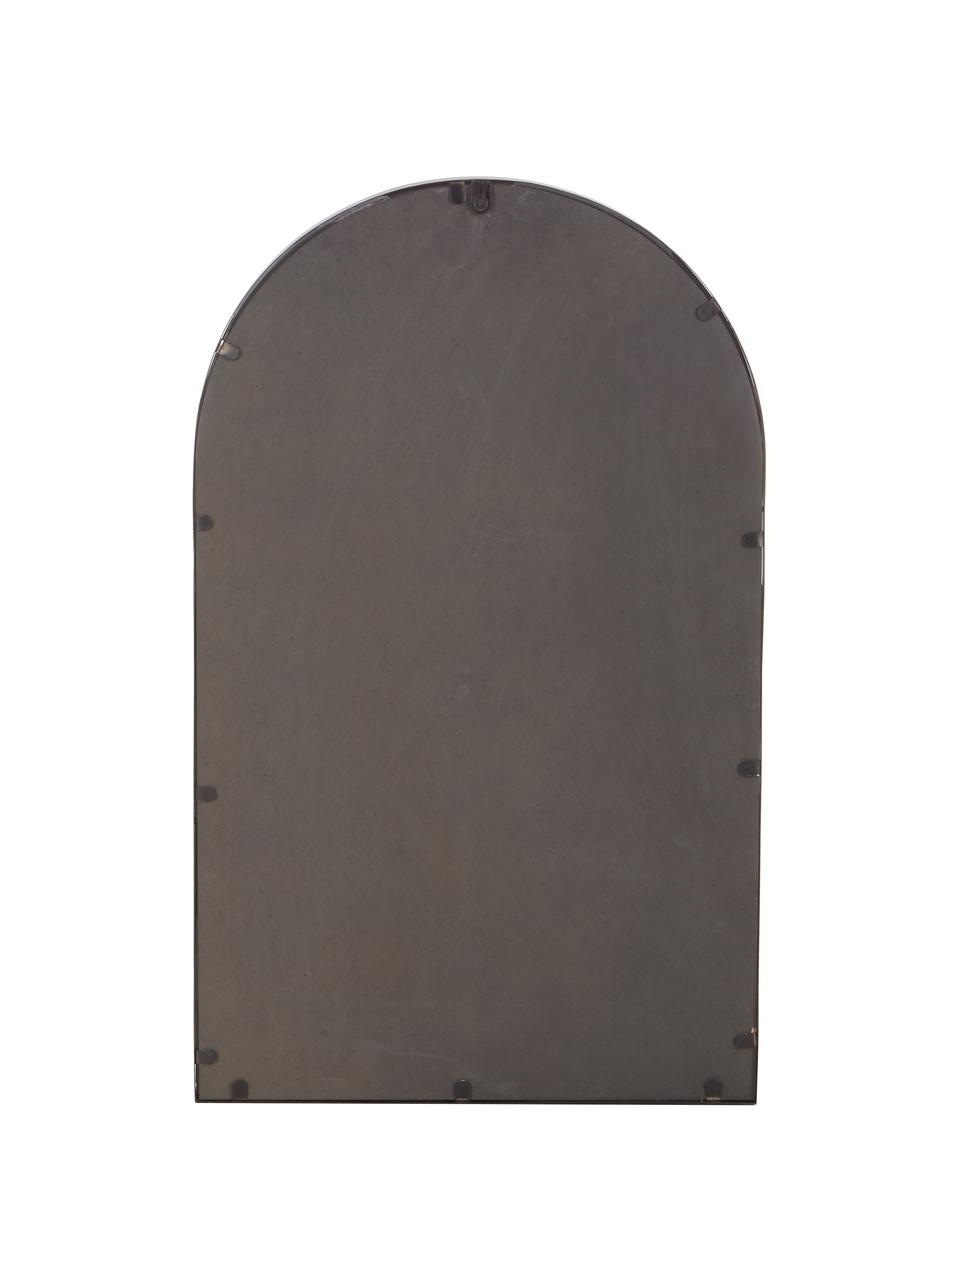 Wandspiegel Grisell mit schwarzem Metallrahmen und Ablagefläche, Rahmen: Metall, beschichtet, Ablagefläche: Glas, Spiegelfläche: Spiegelglas, Schwarz, 46 x 77 cm